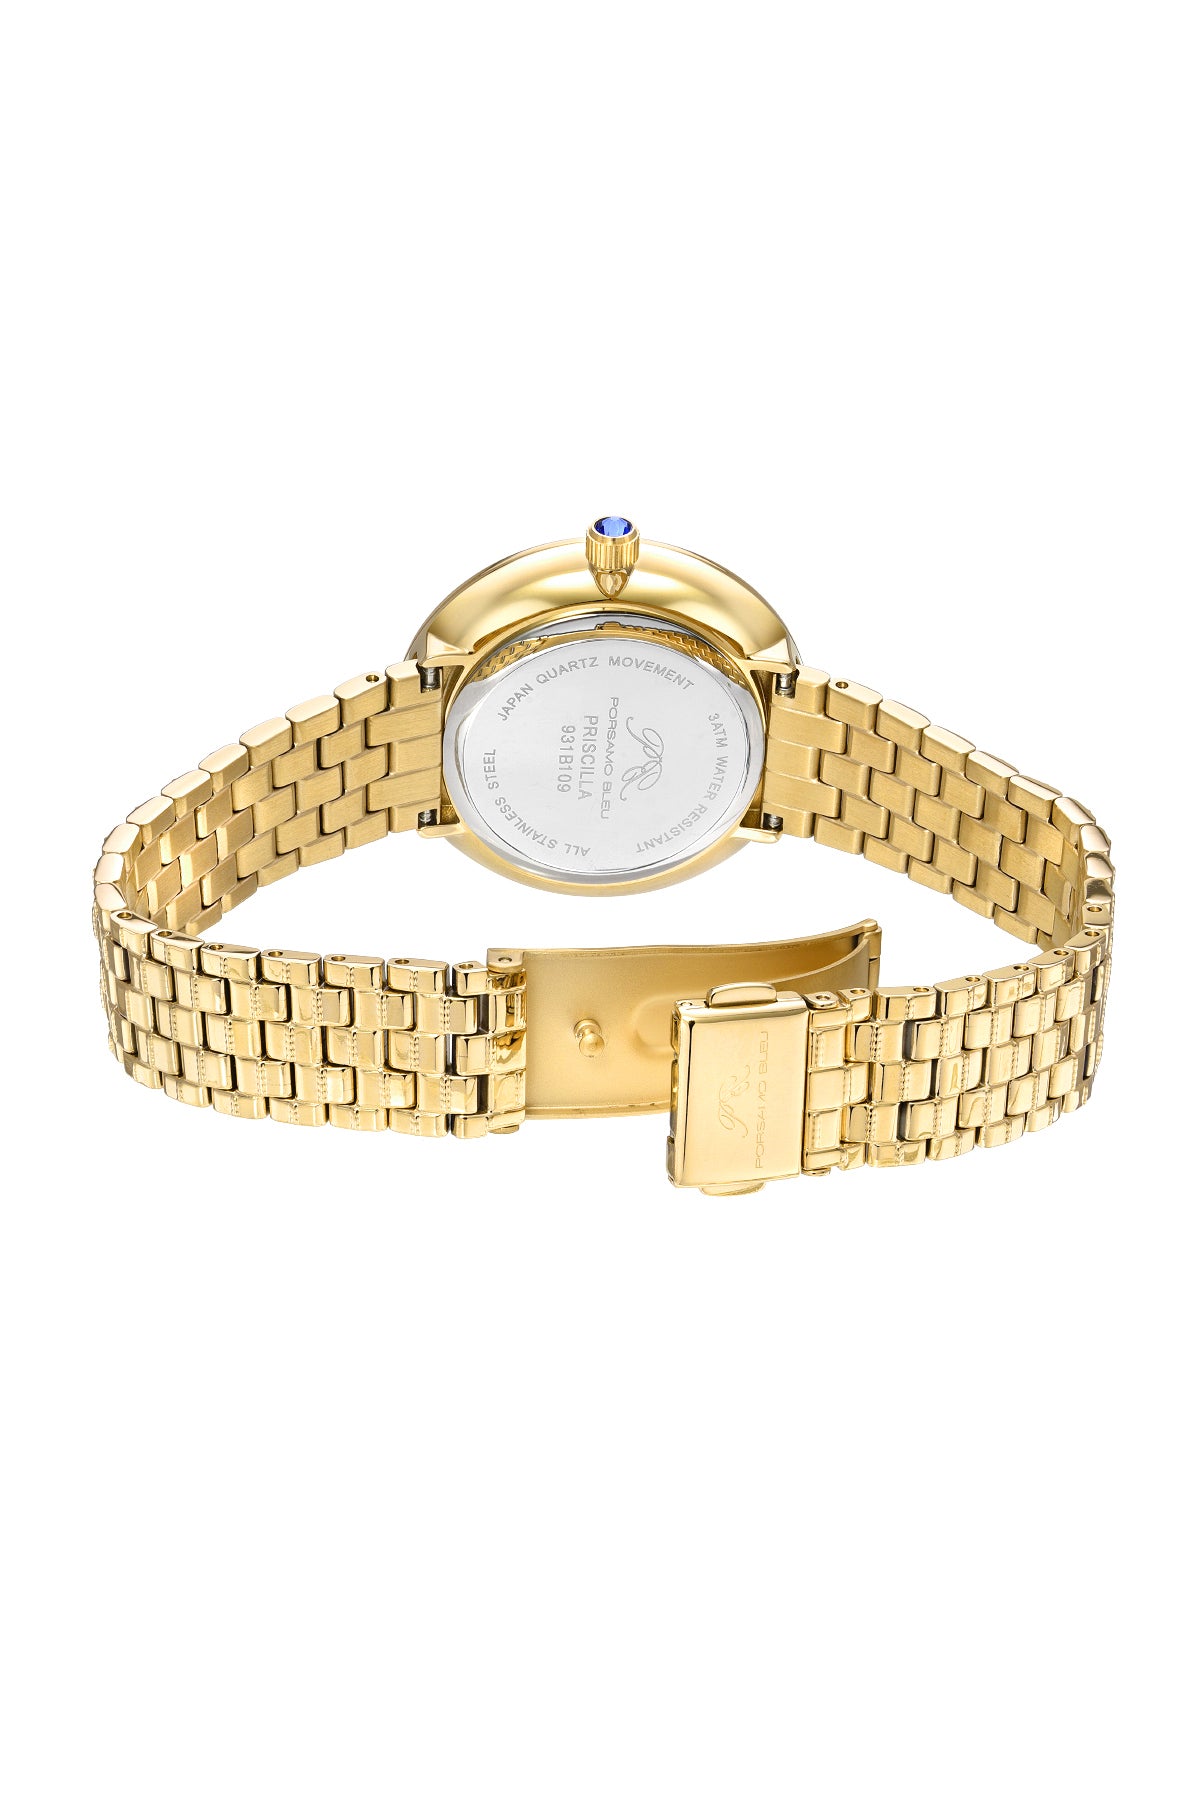 Porsamo Bleu Priscilla Luxury  Women's Stainless Steel Watch, Gold, White 931BPRS